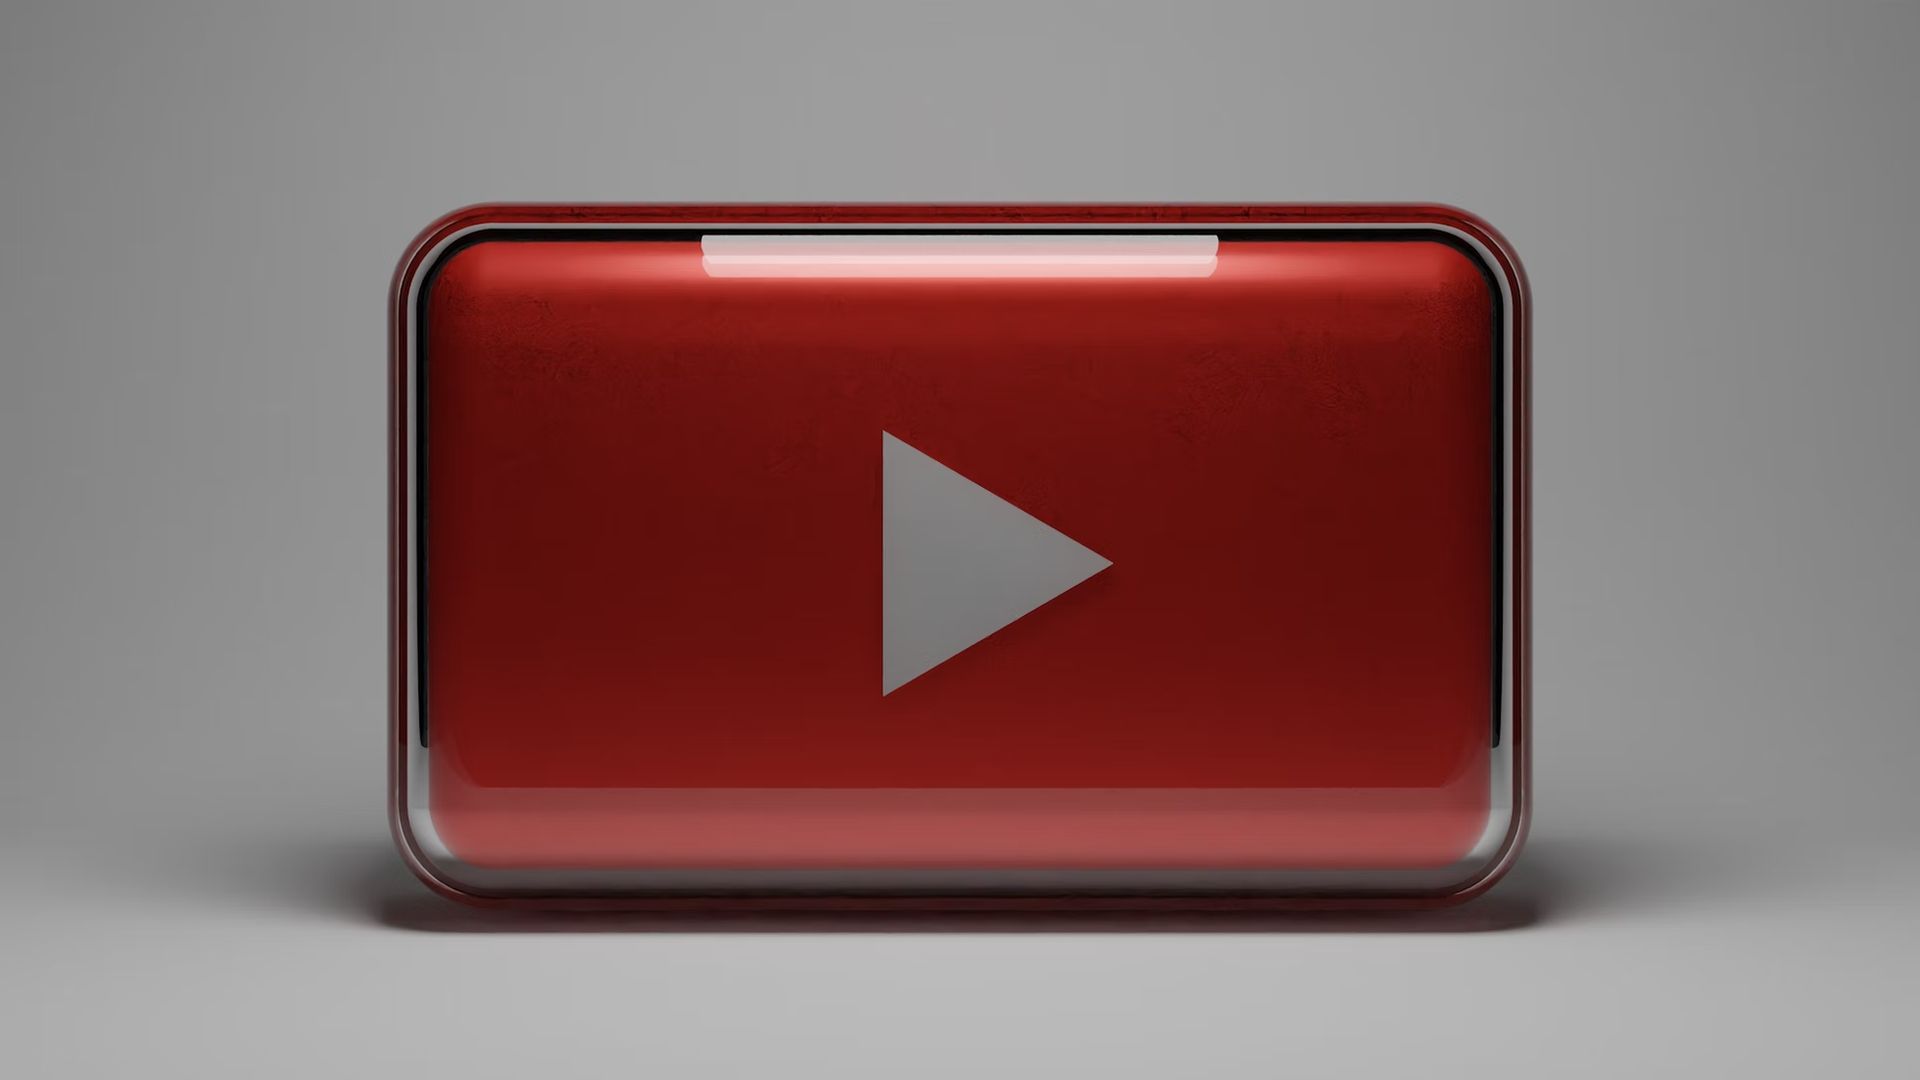 Longest YouTube video in 2022